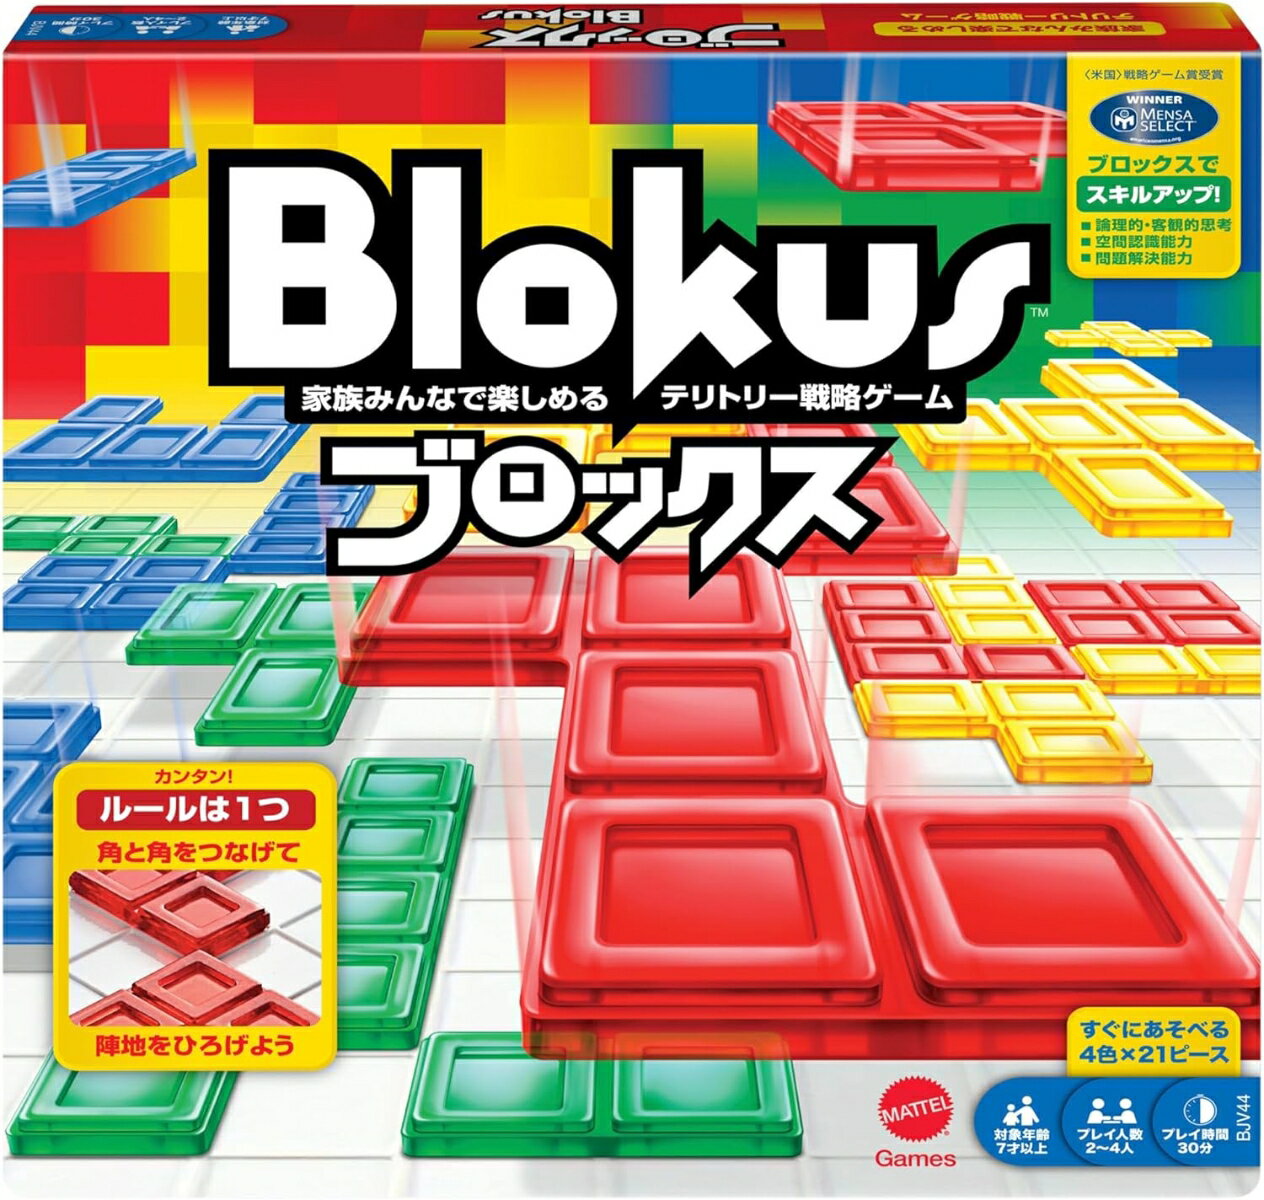 マテルゲーム(Mattel Game) ブロックス Blokus【知育ゲーム】【ボードゲーム】【7歳〜】2〜4人用BJV44